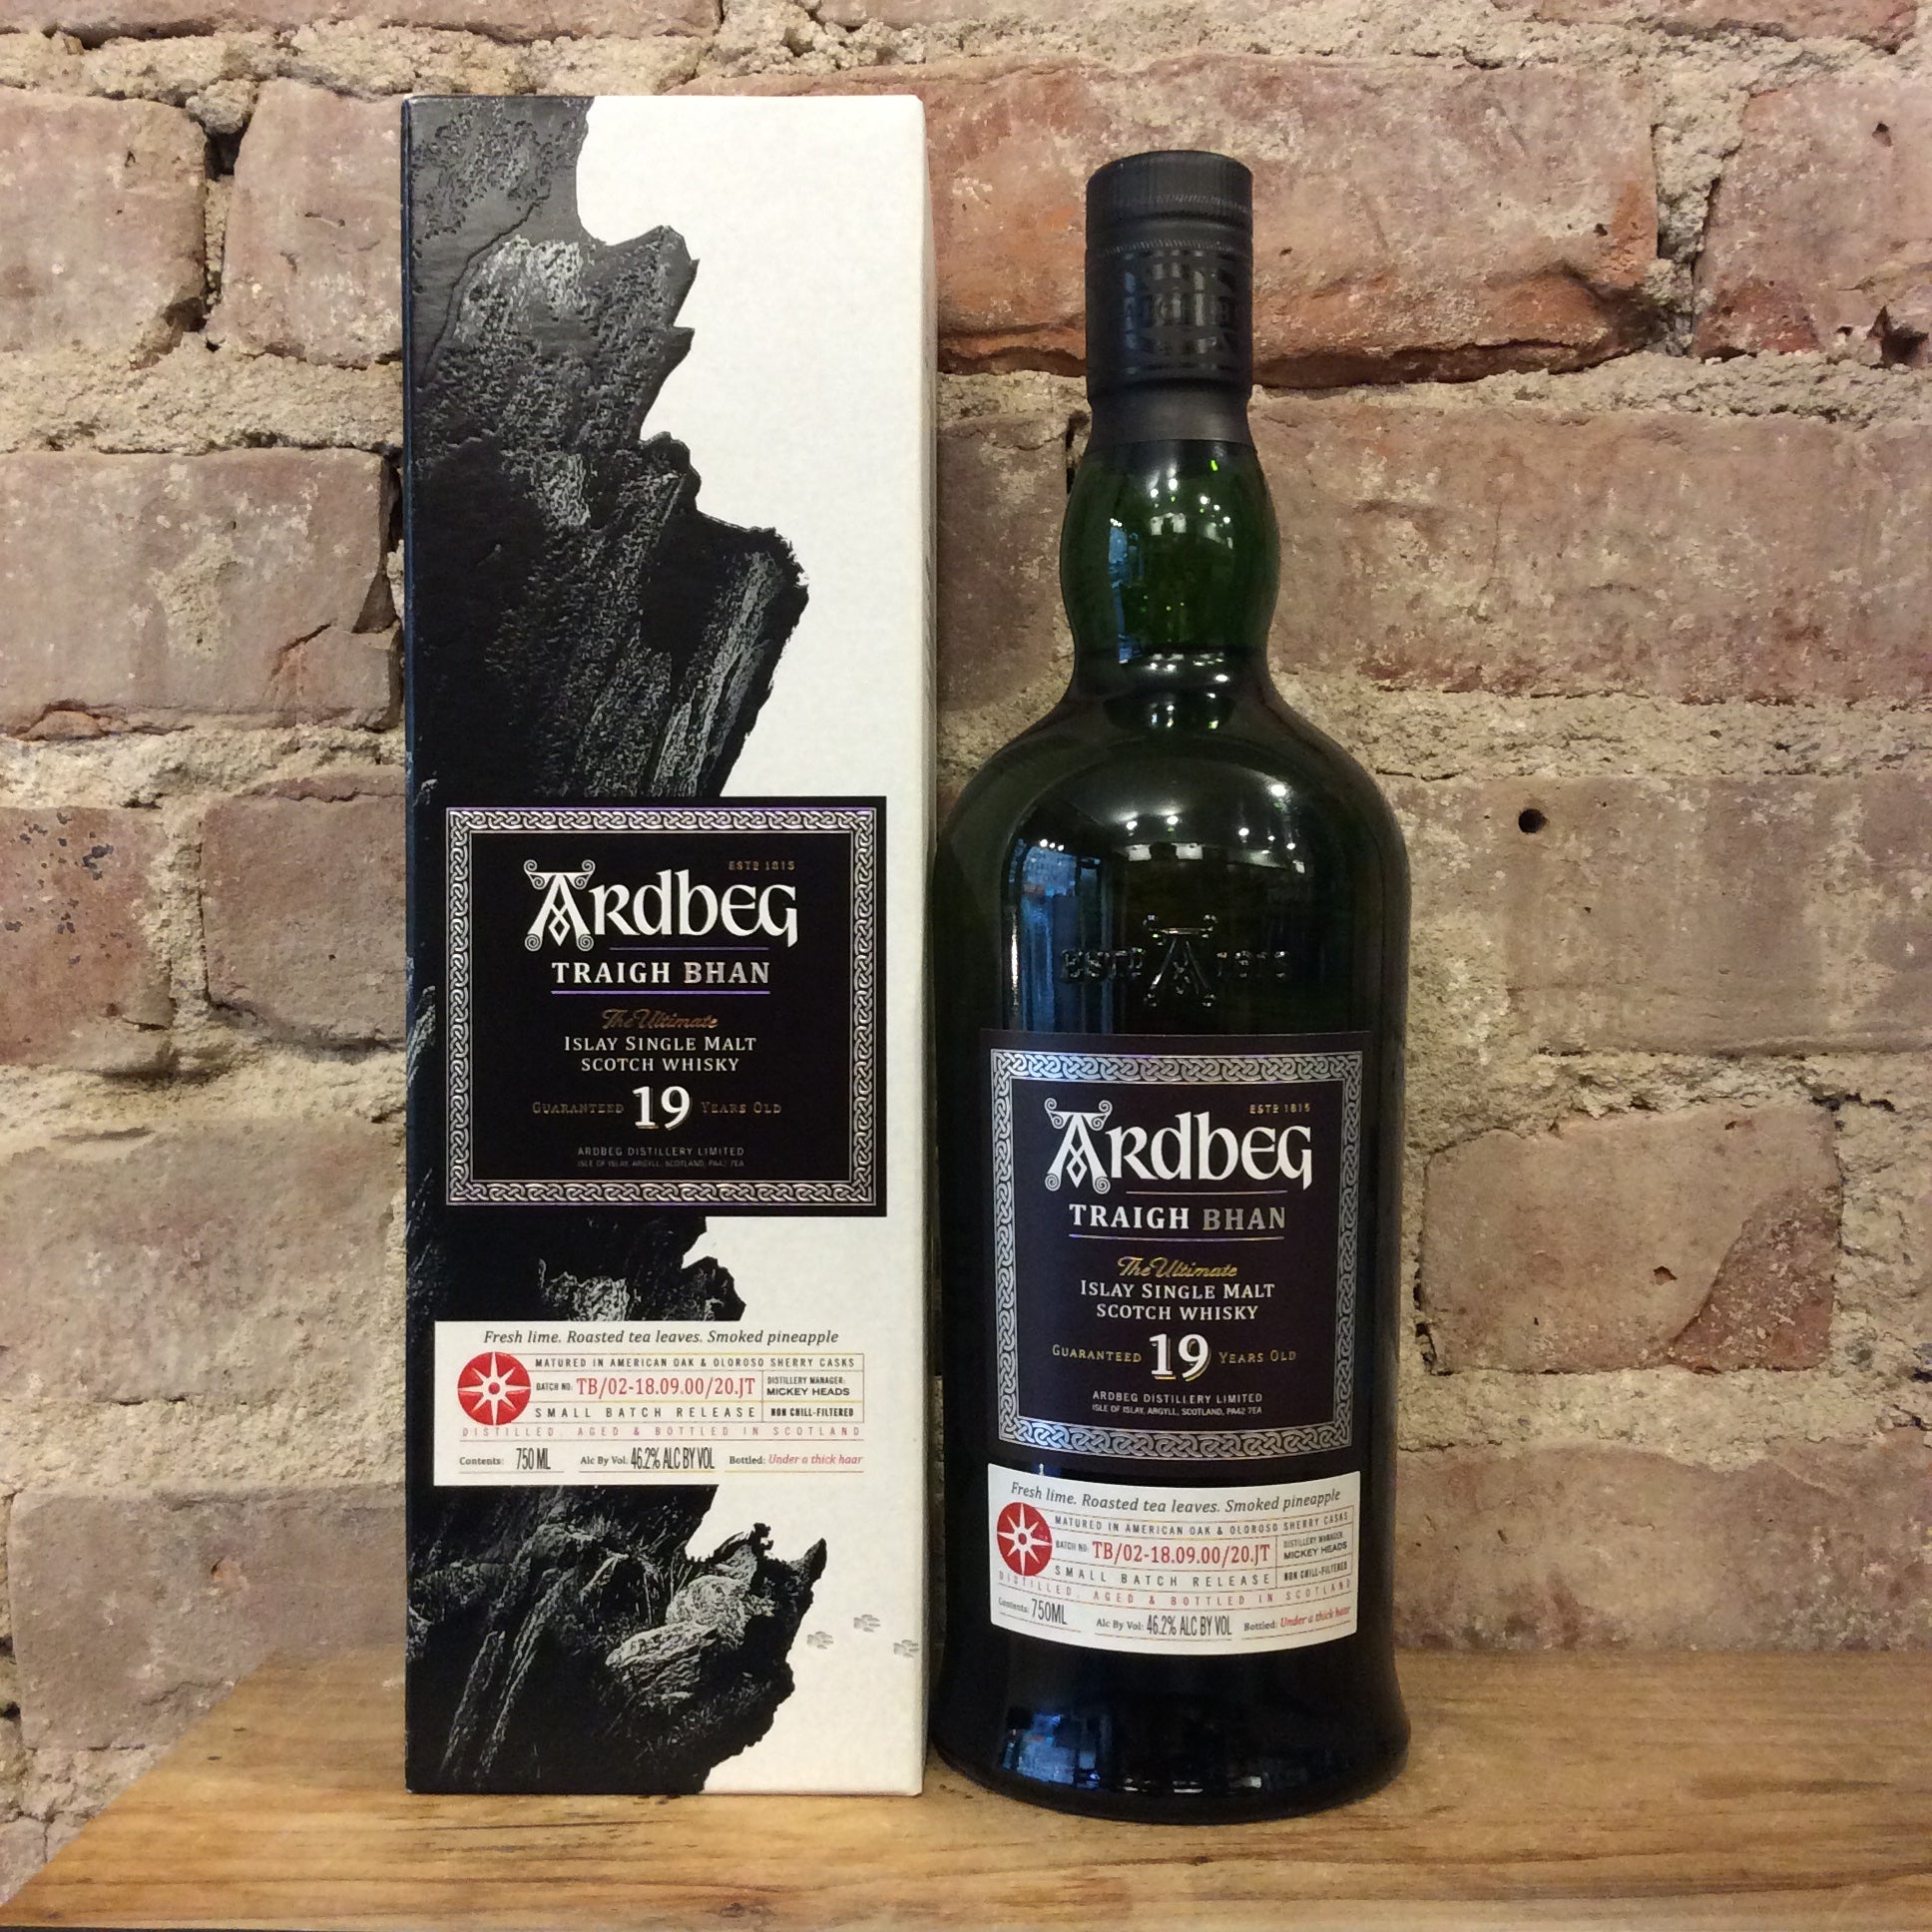 Whisky Ardbeg 25 ans - Buy Wine Online. Bordeaux, Burgundy